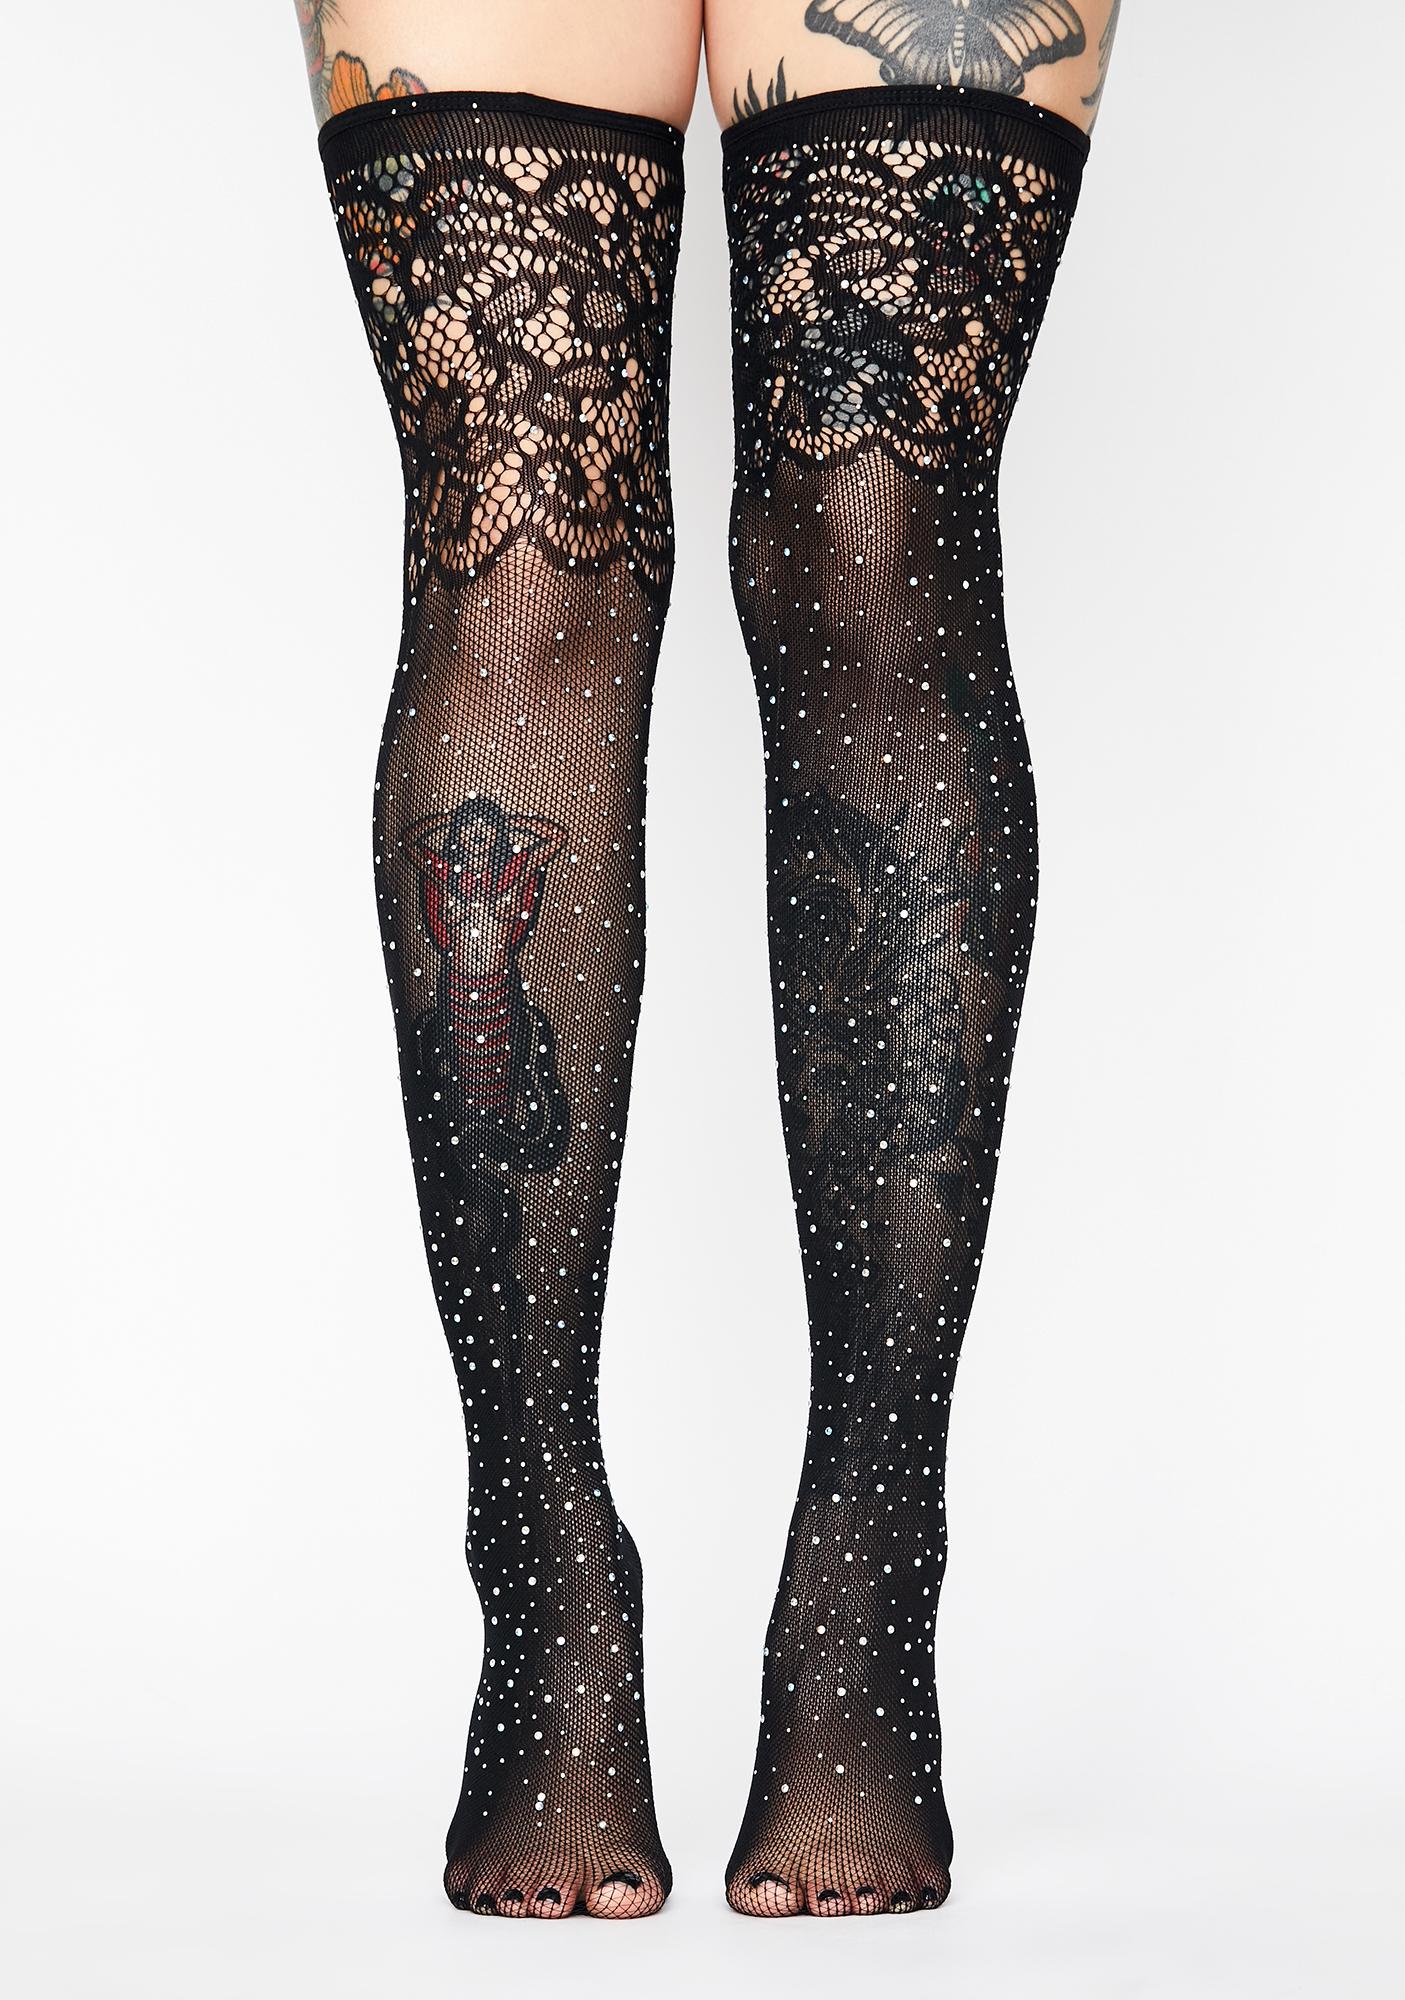 Rhinestone Lace Fishnet Thigh High Sheer Stockings Black | Dolls Kill